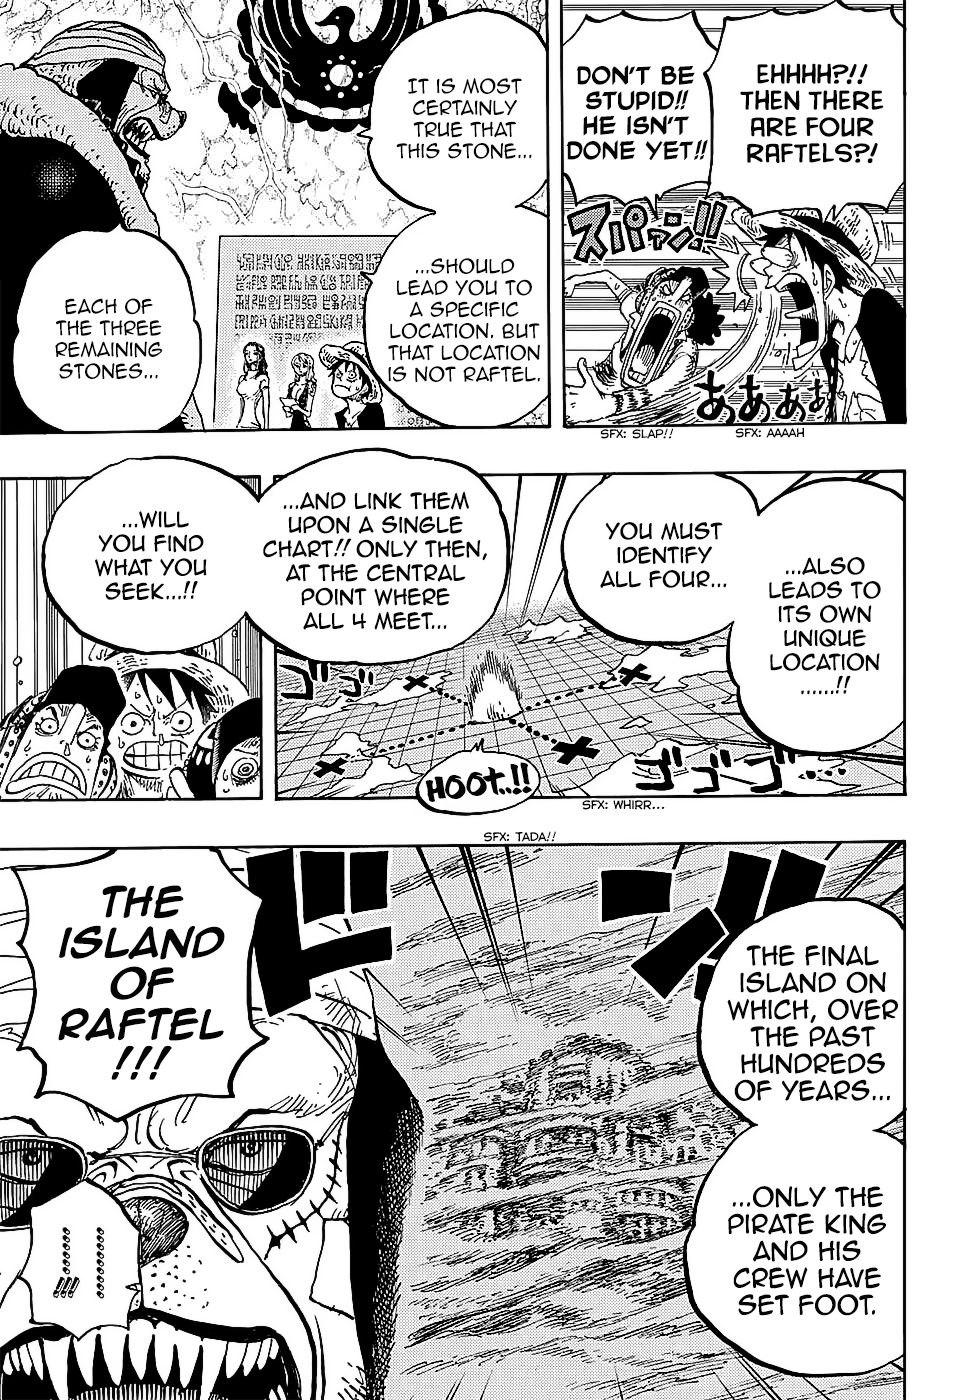 Καμμένες σκέψεις για το One Piece - Σελίδα 33 07